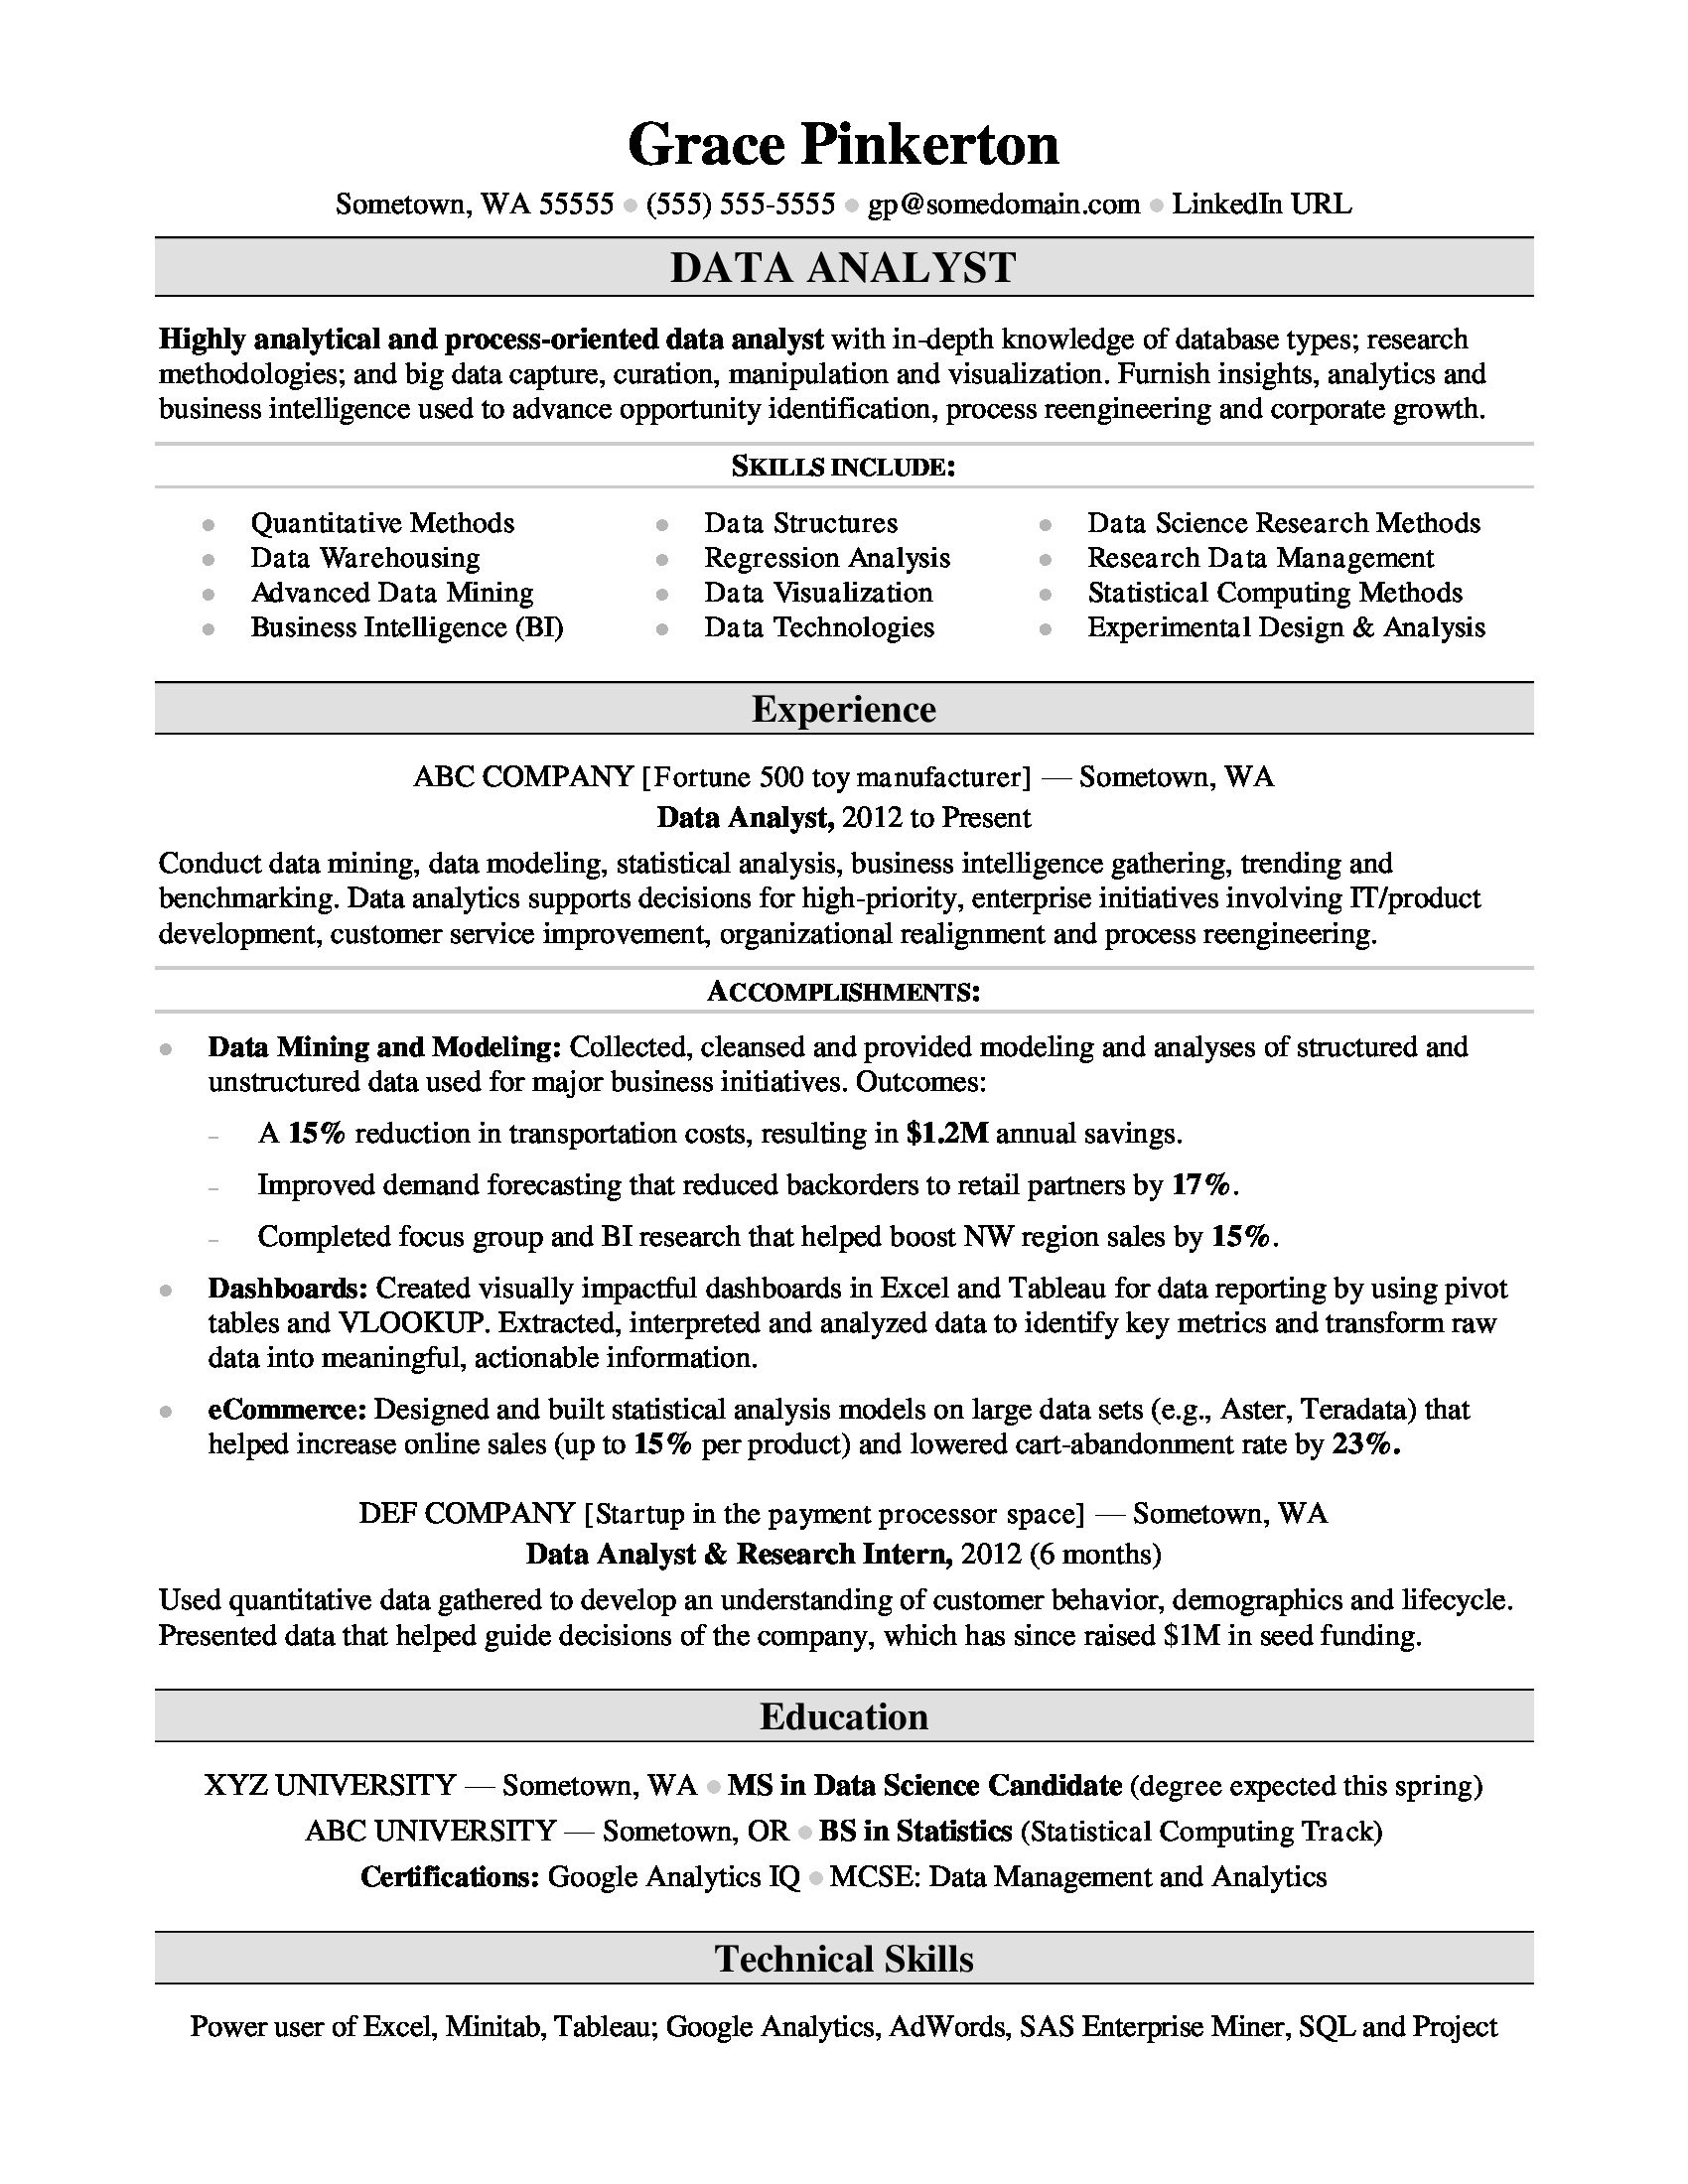 Sample Resume Of A Data Analyst Data Analyst Resume Sample Monster.com